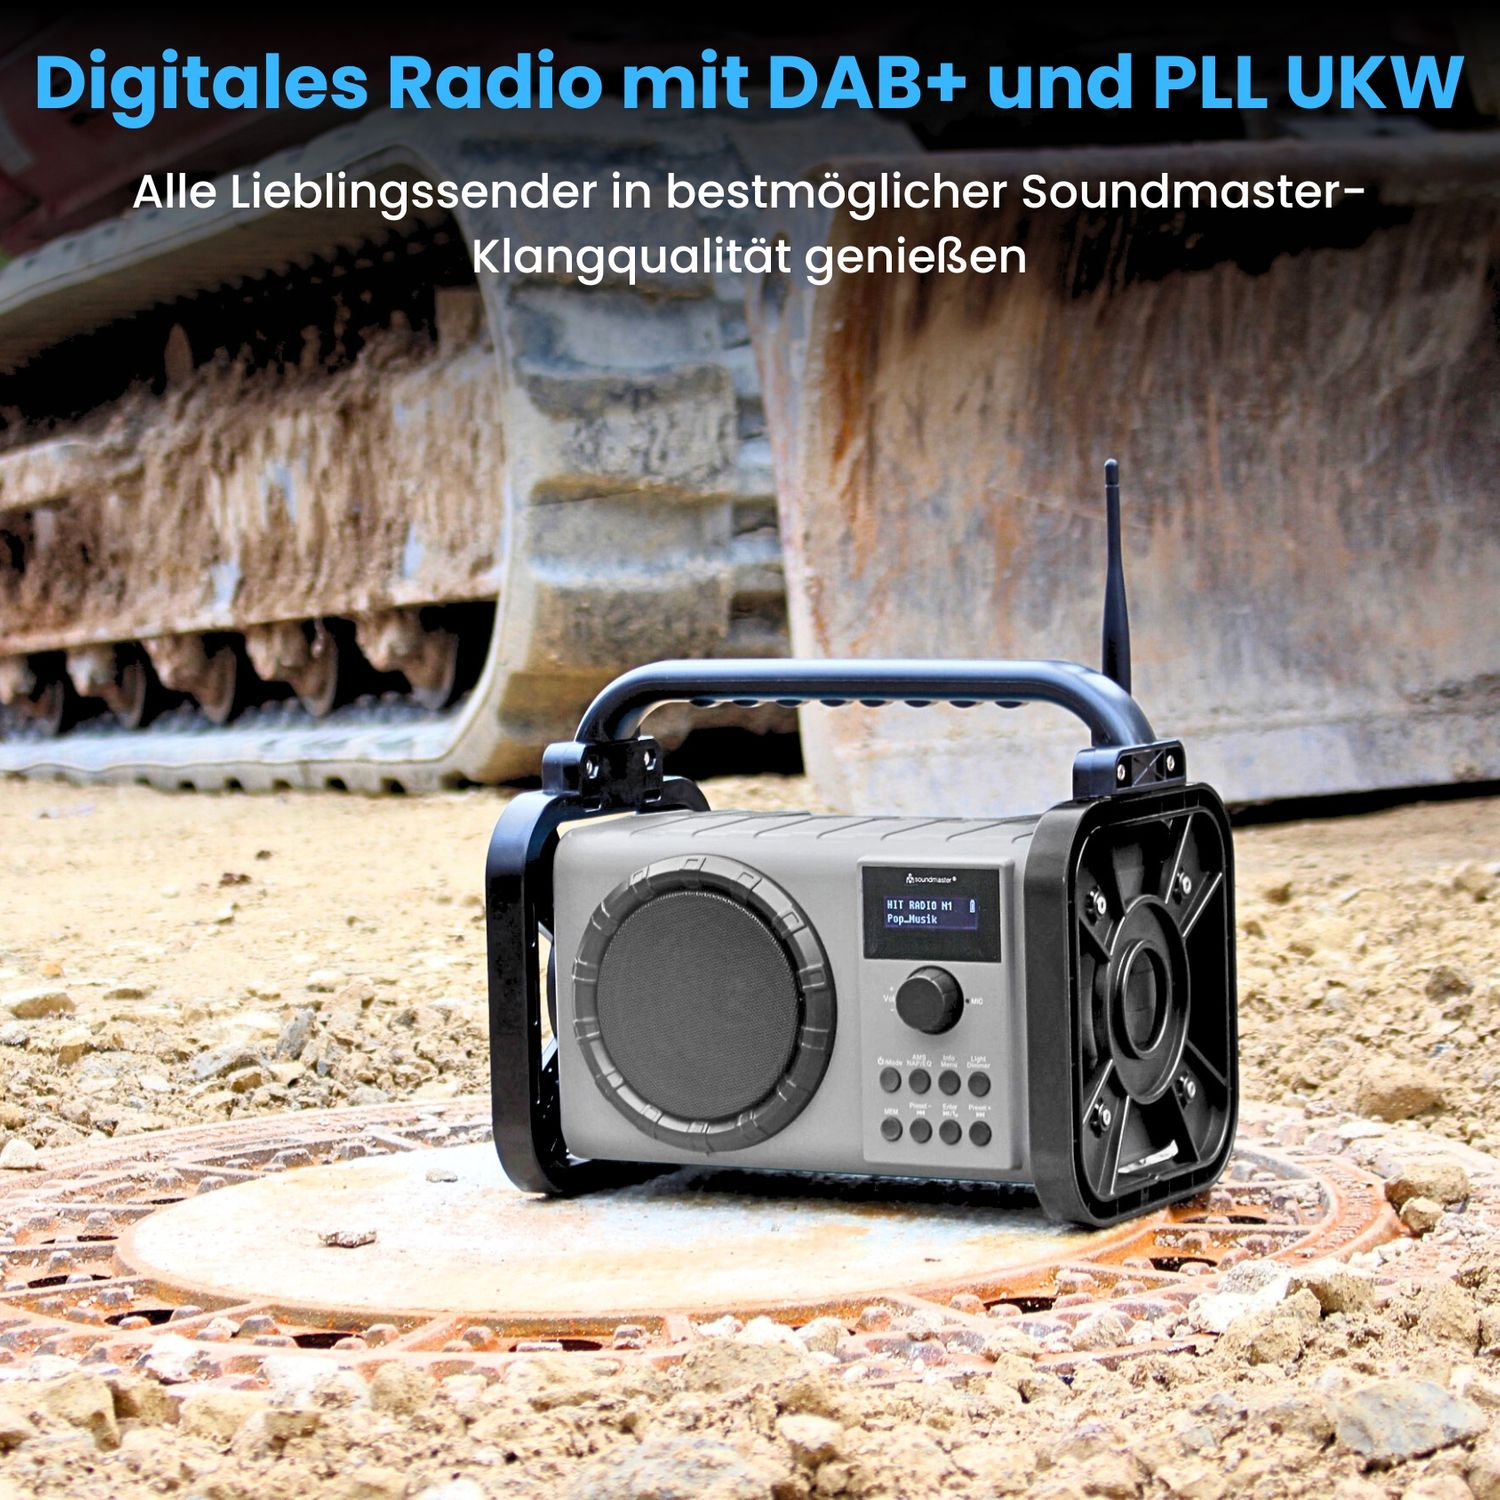 SOUNDMASTER schwarz DAB+, AM, DAB80SW Baustellenradio, FM,